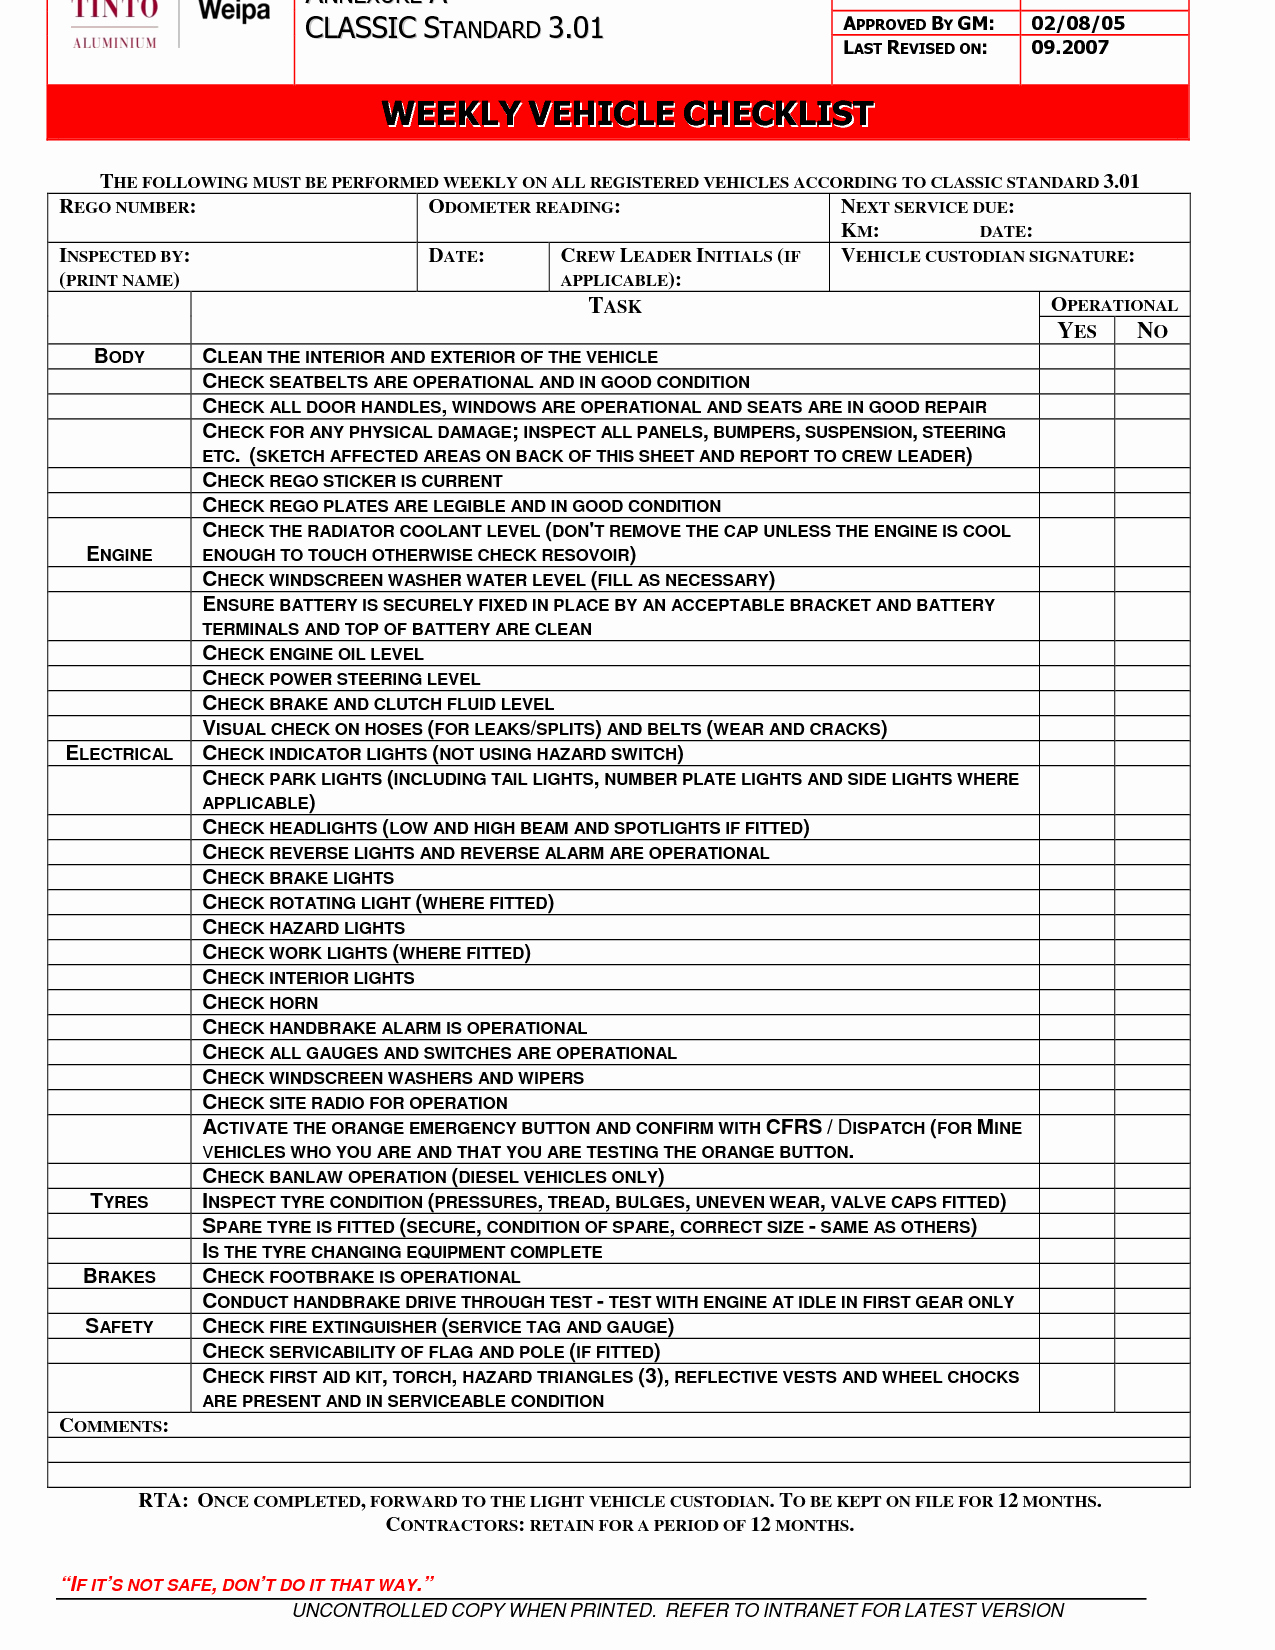 Vehicle Maintenance Checklist Template Ewolf